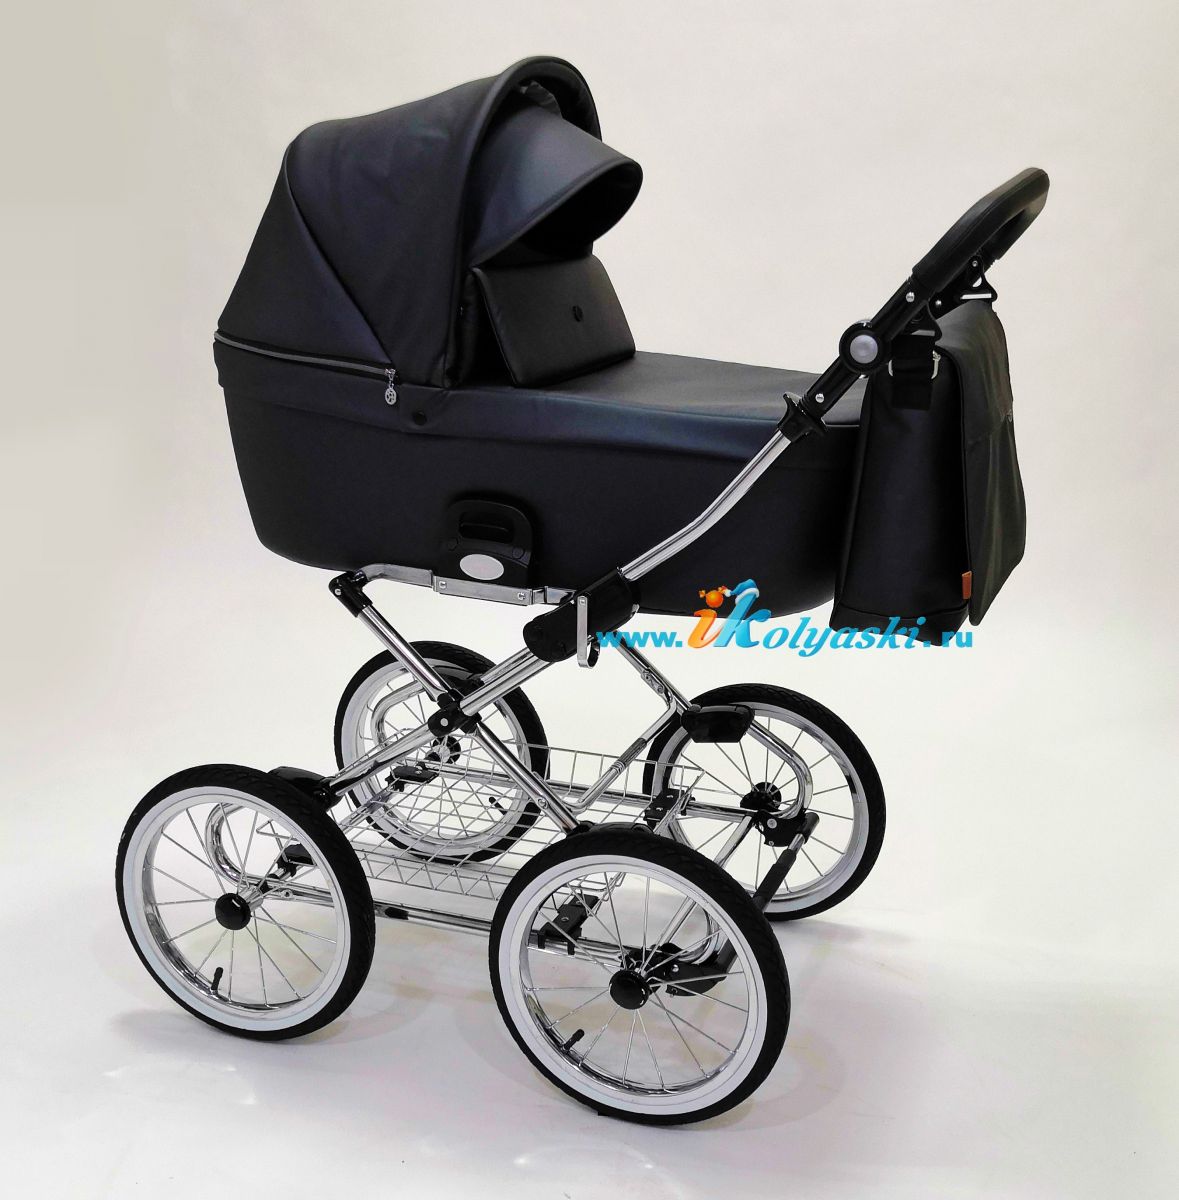 Roan Coss Classic коляска для новорожденных 3 в 1 на больших колесах новые цвета 2020 - купить в интернет-магазине Иколяски в Москве с доставкой по РФ - цвет Black Pearl